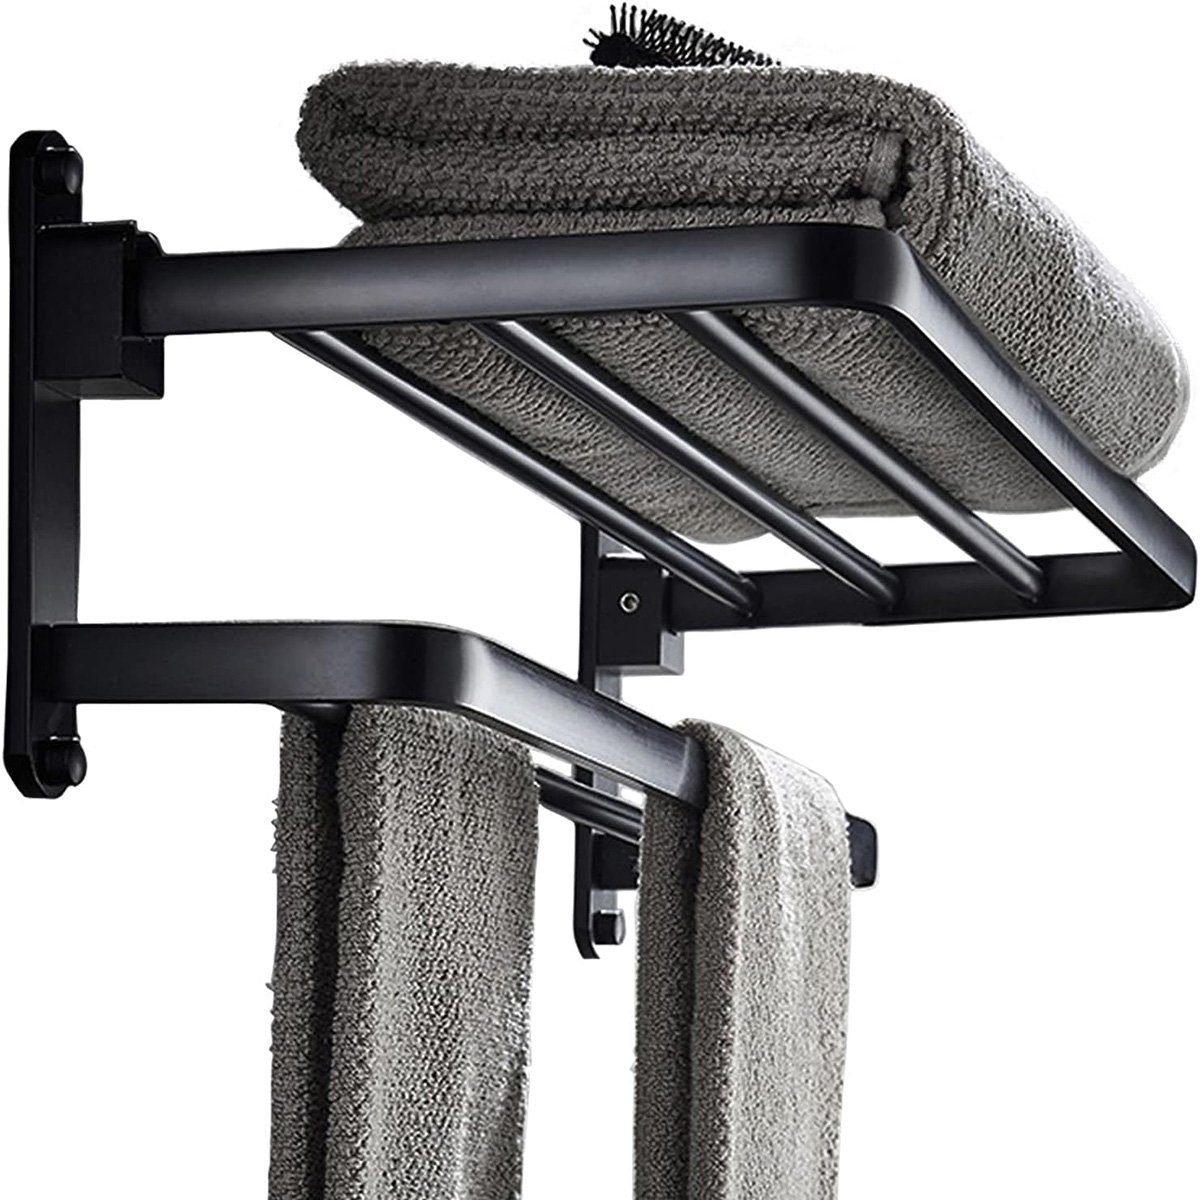 götäzer Handtuchhalter 40 cm großer Handtuchhalter für das Badezimmer, Mit doppeltem Handtuchhalter und Haken, mattschwarz